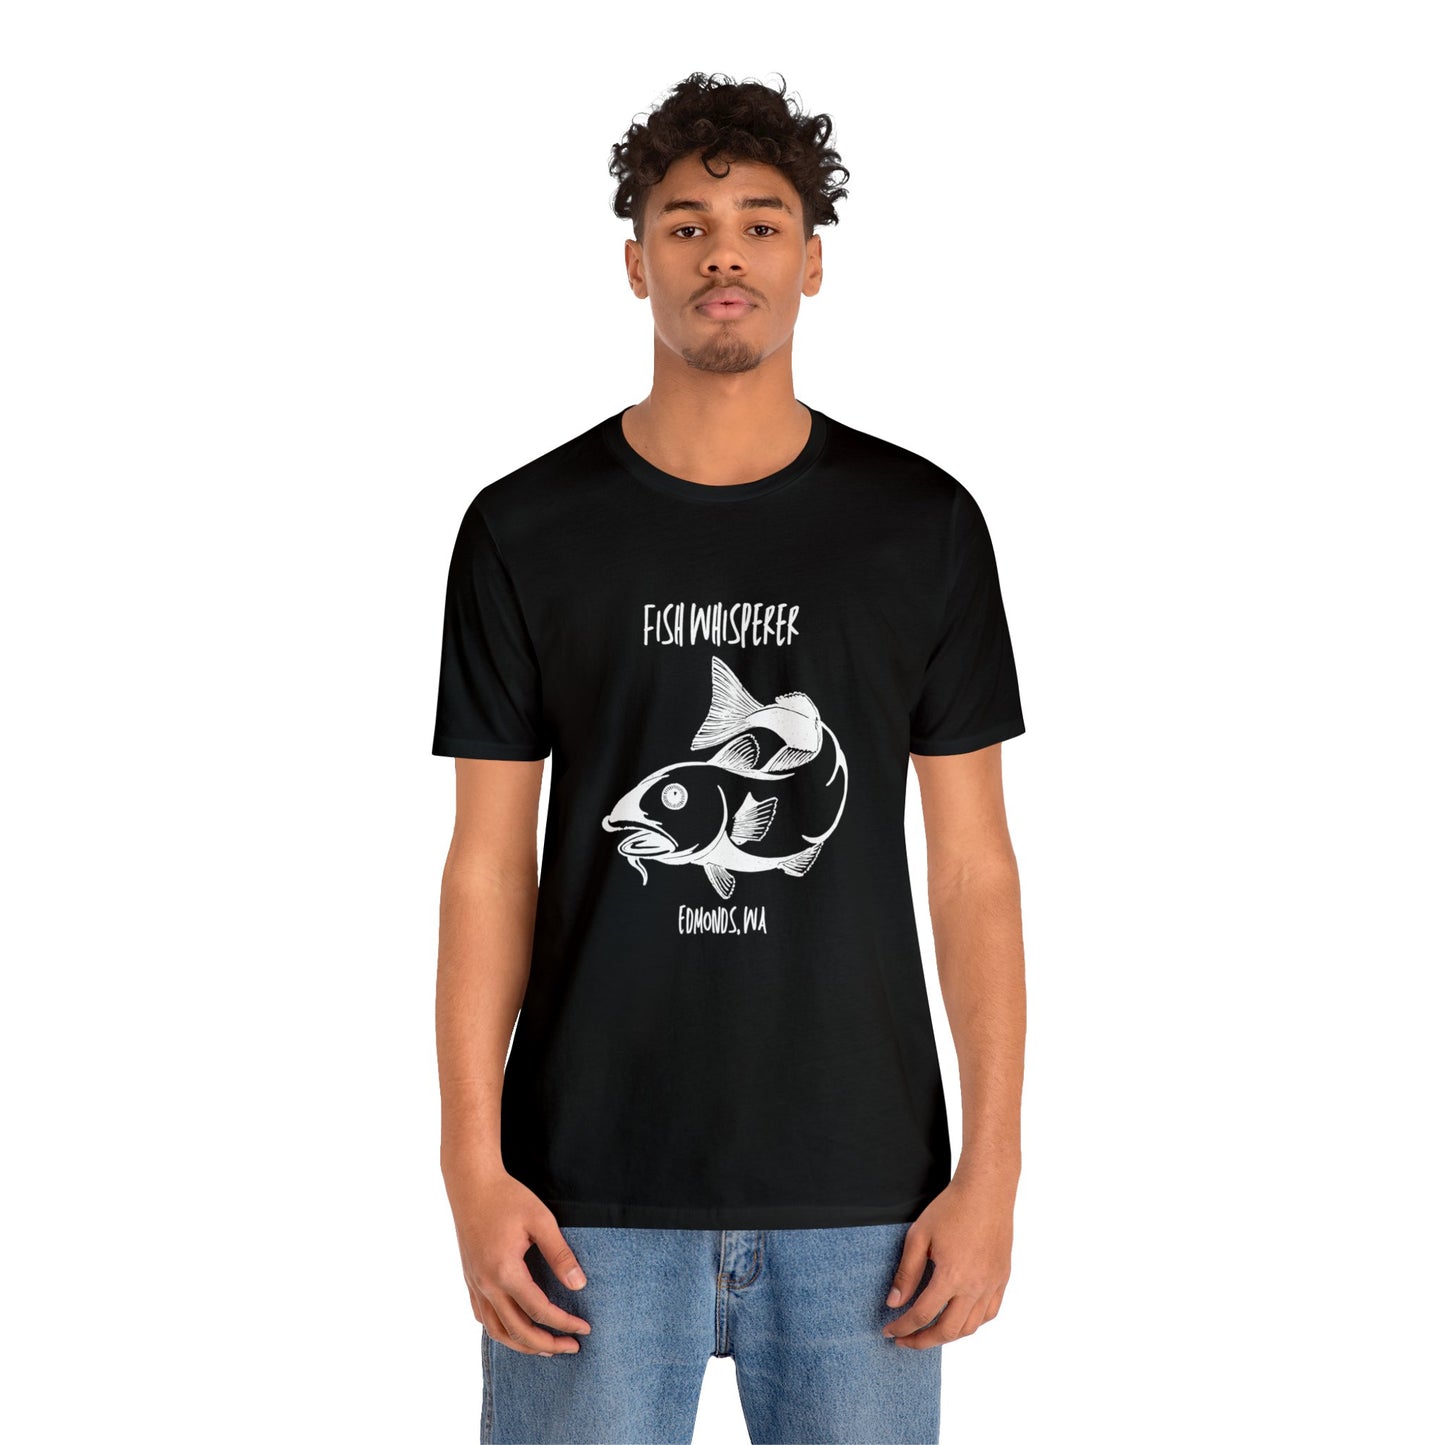 Fish Whisperer T-shirt